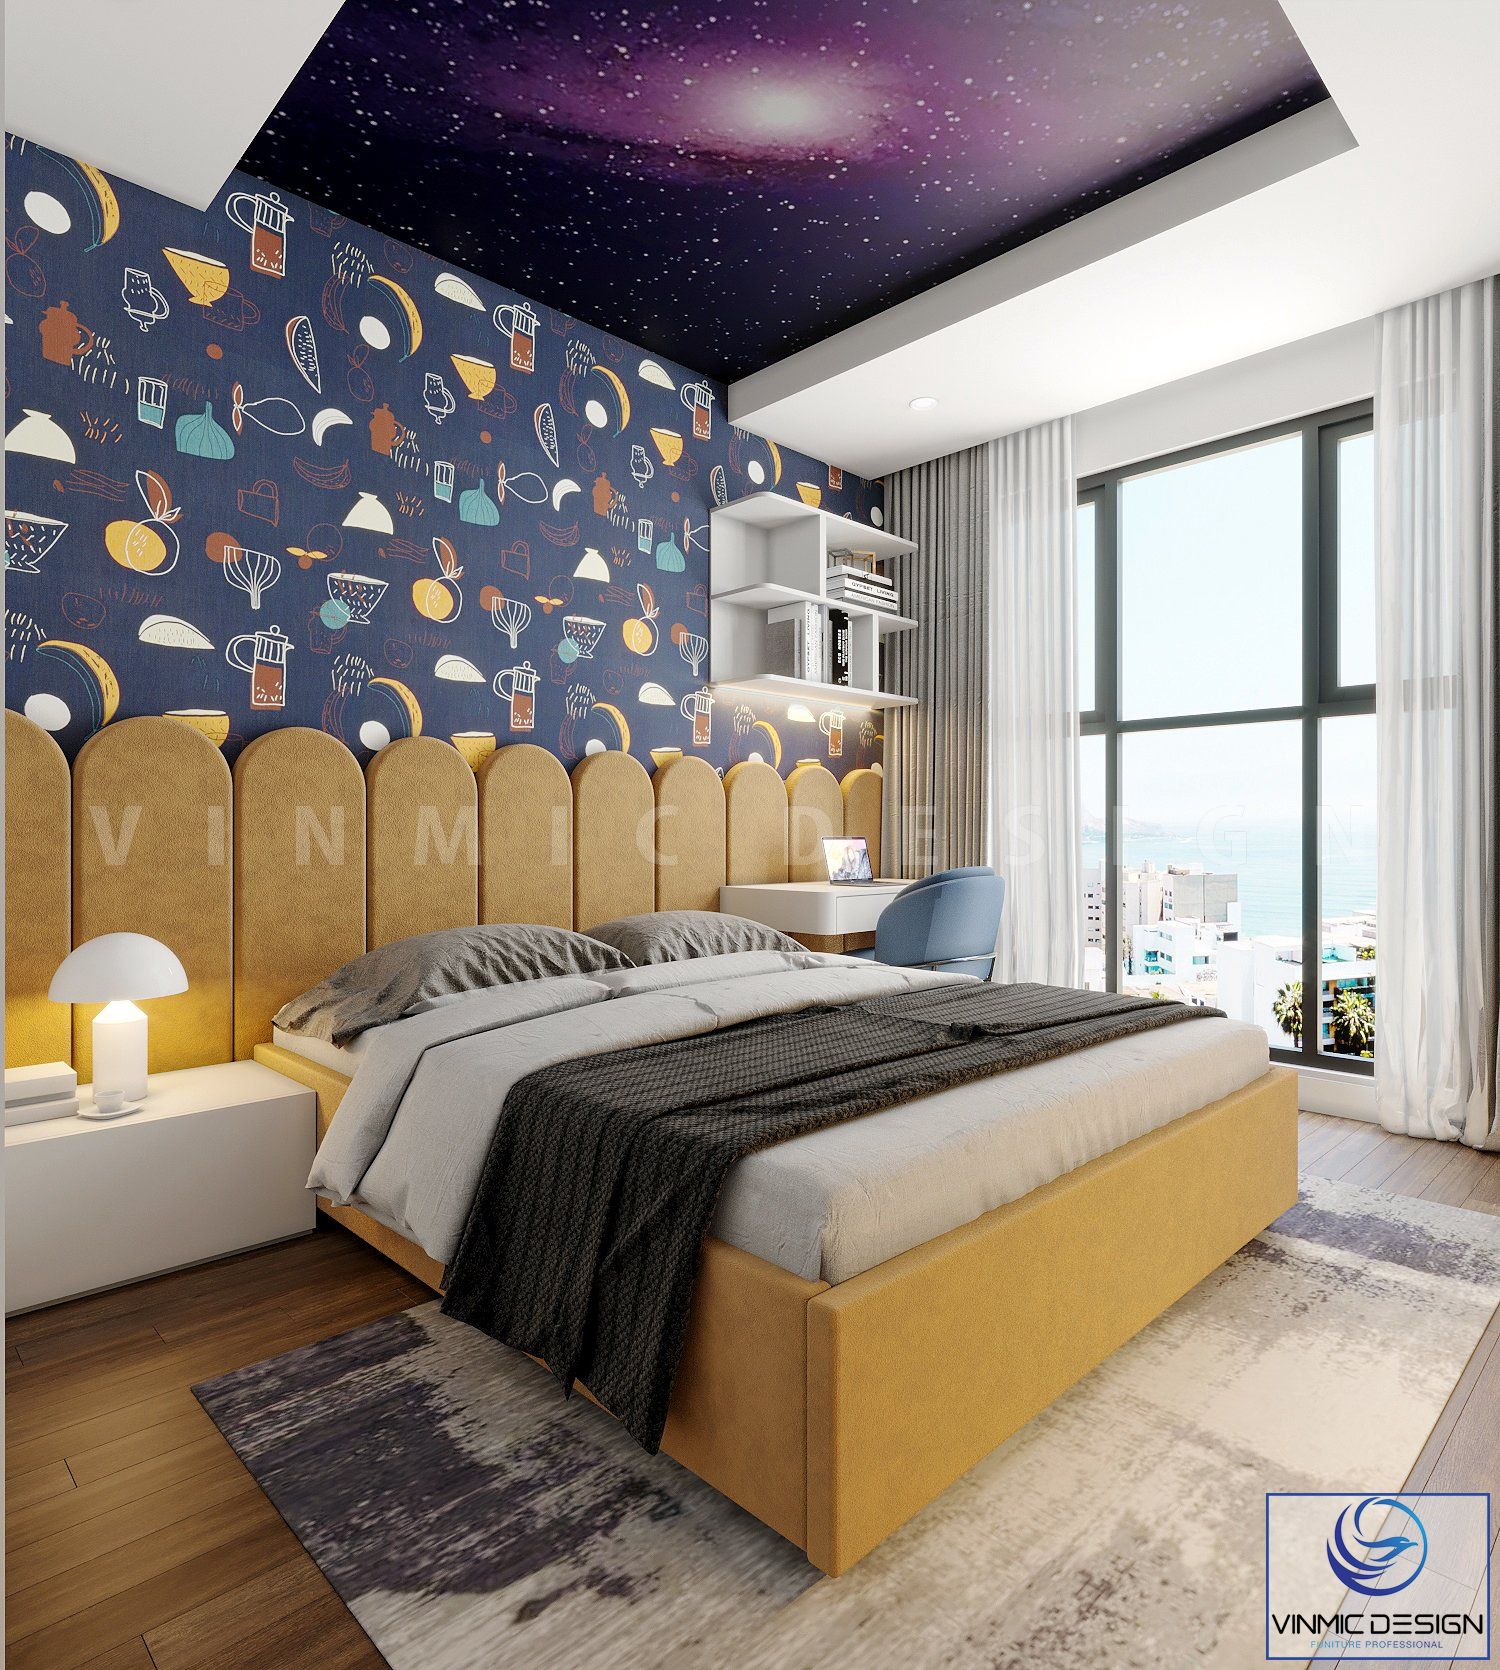 Thiết kế phòng ngủ cho bé nổi bật bởi bộ giấy gián tường